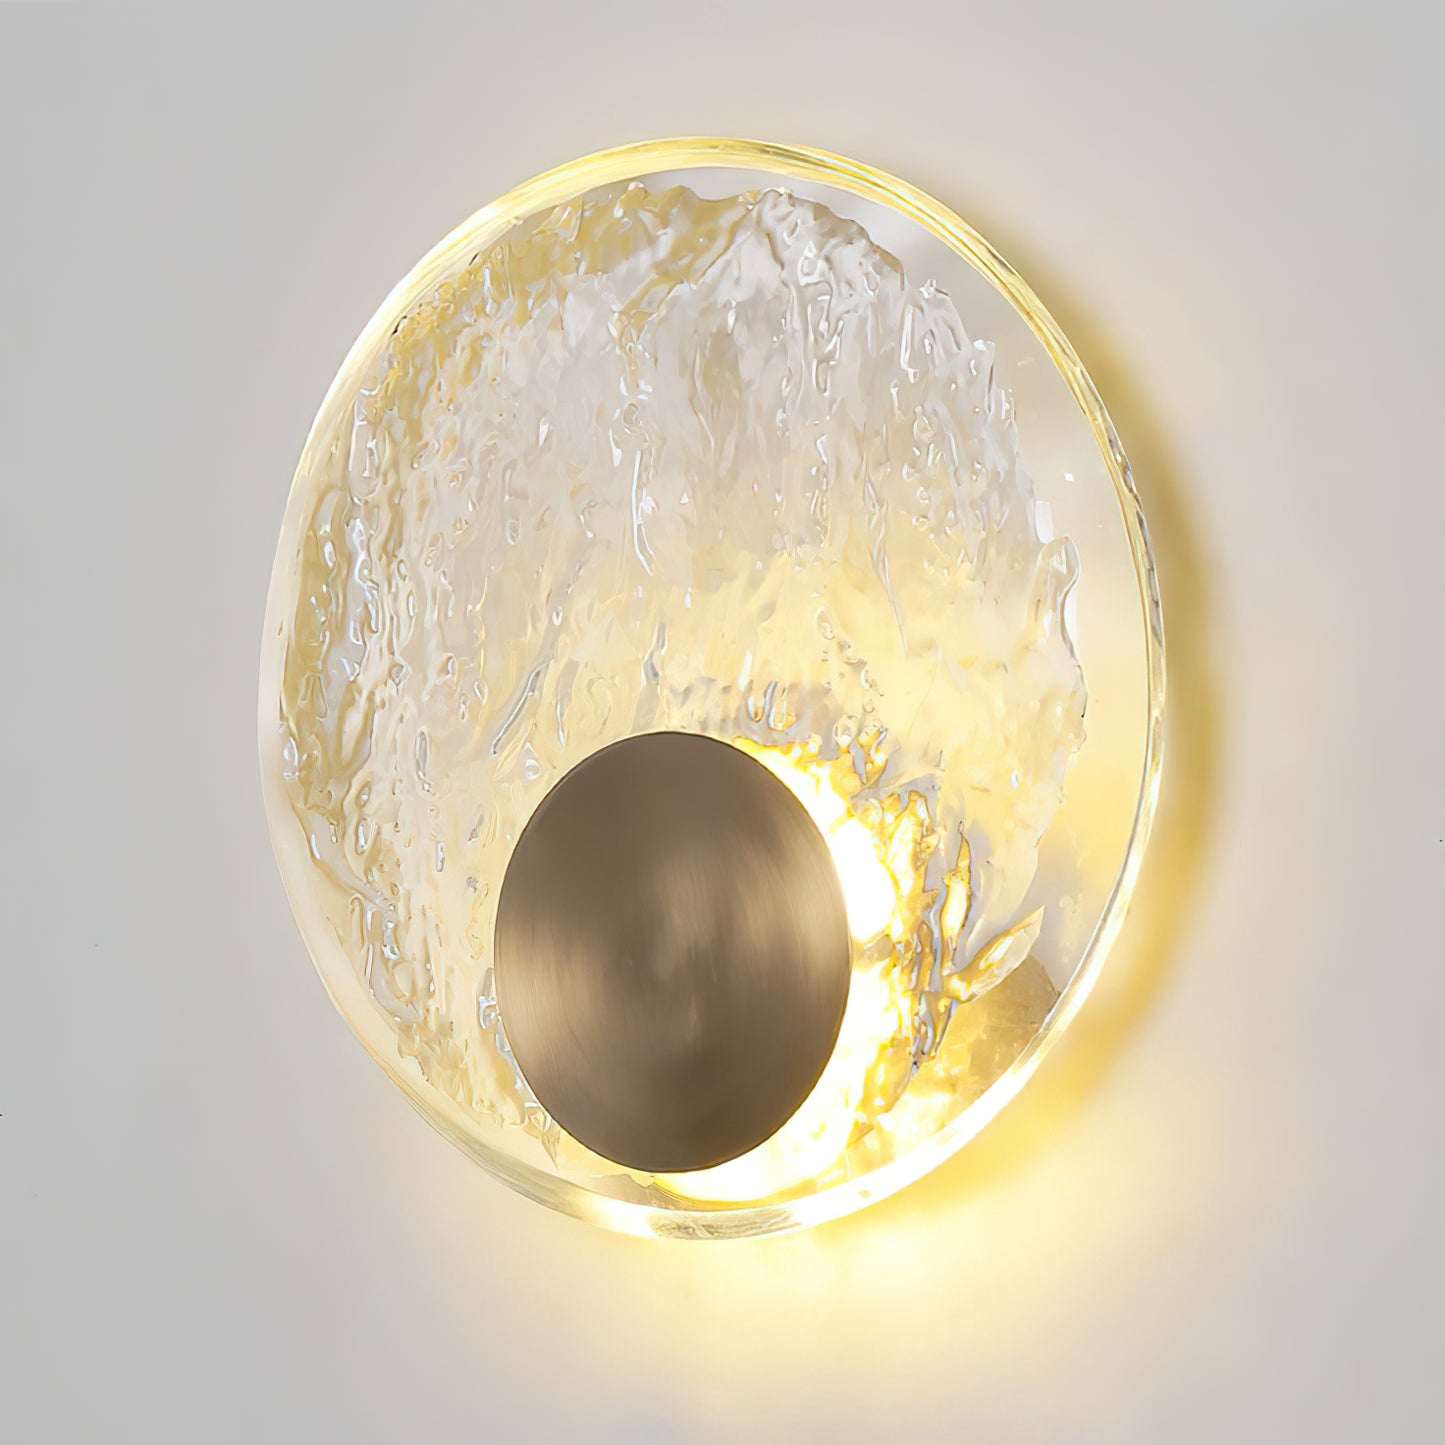 Brass Round Glass Wall Light